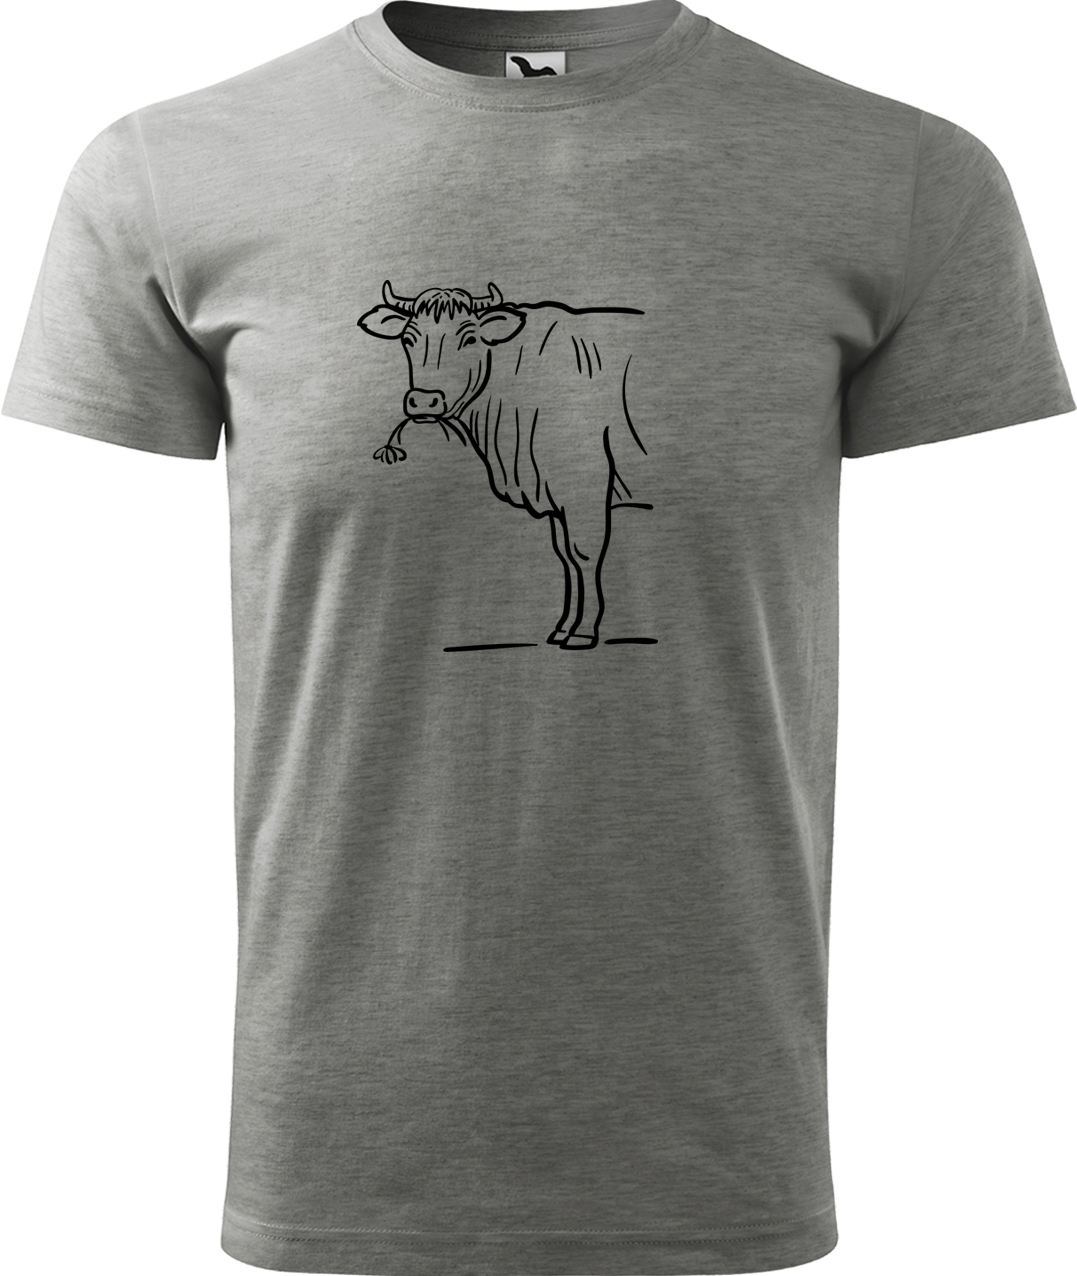 Pánské tričko s krávou - Býk Velikost: S, Barva: Tmavě šedý melír (12), Střih: pánský